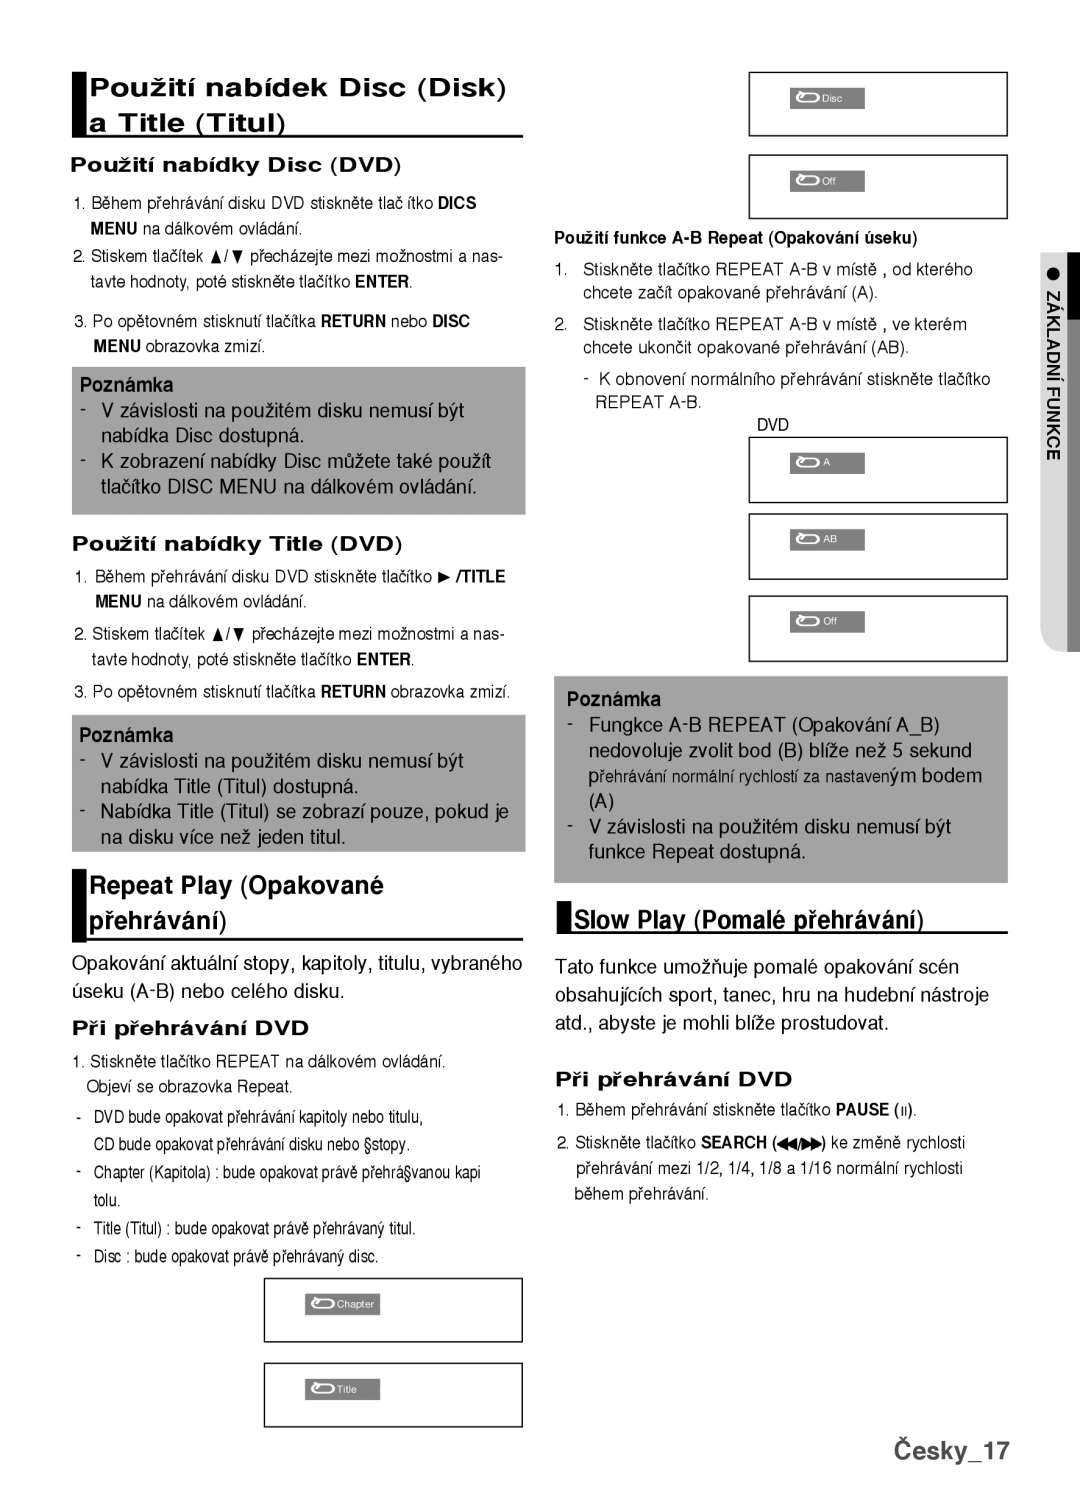 Samsung DVD-H1080/XET manual PouÏití nabídek Disc Disk a Title Titul, Repeat Play Opakované pehrávání, Česky17, Poznámka 